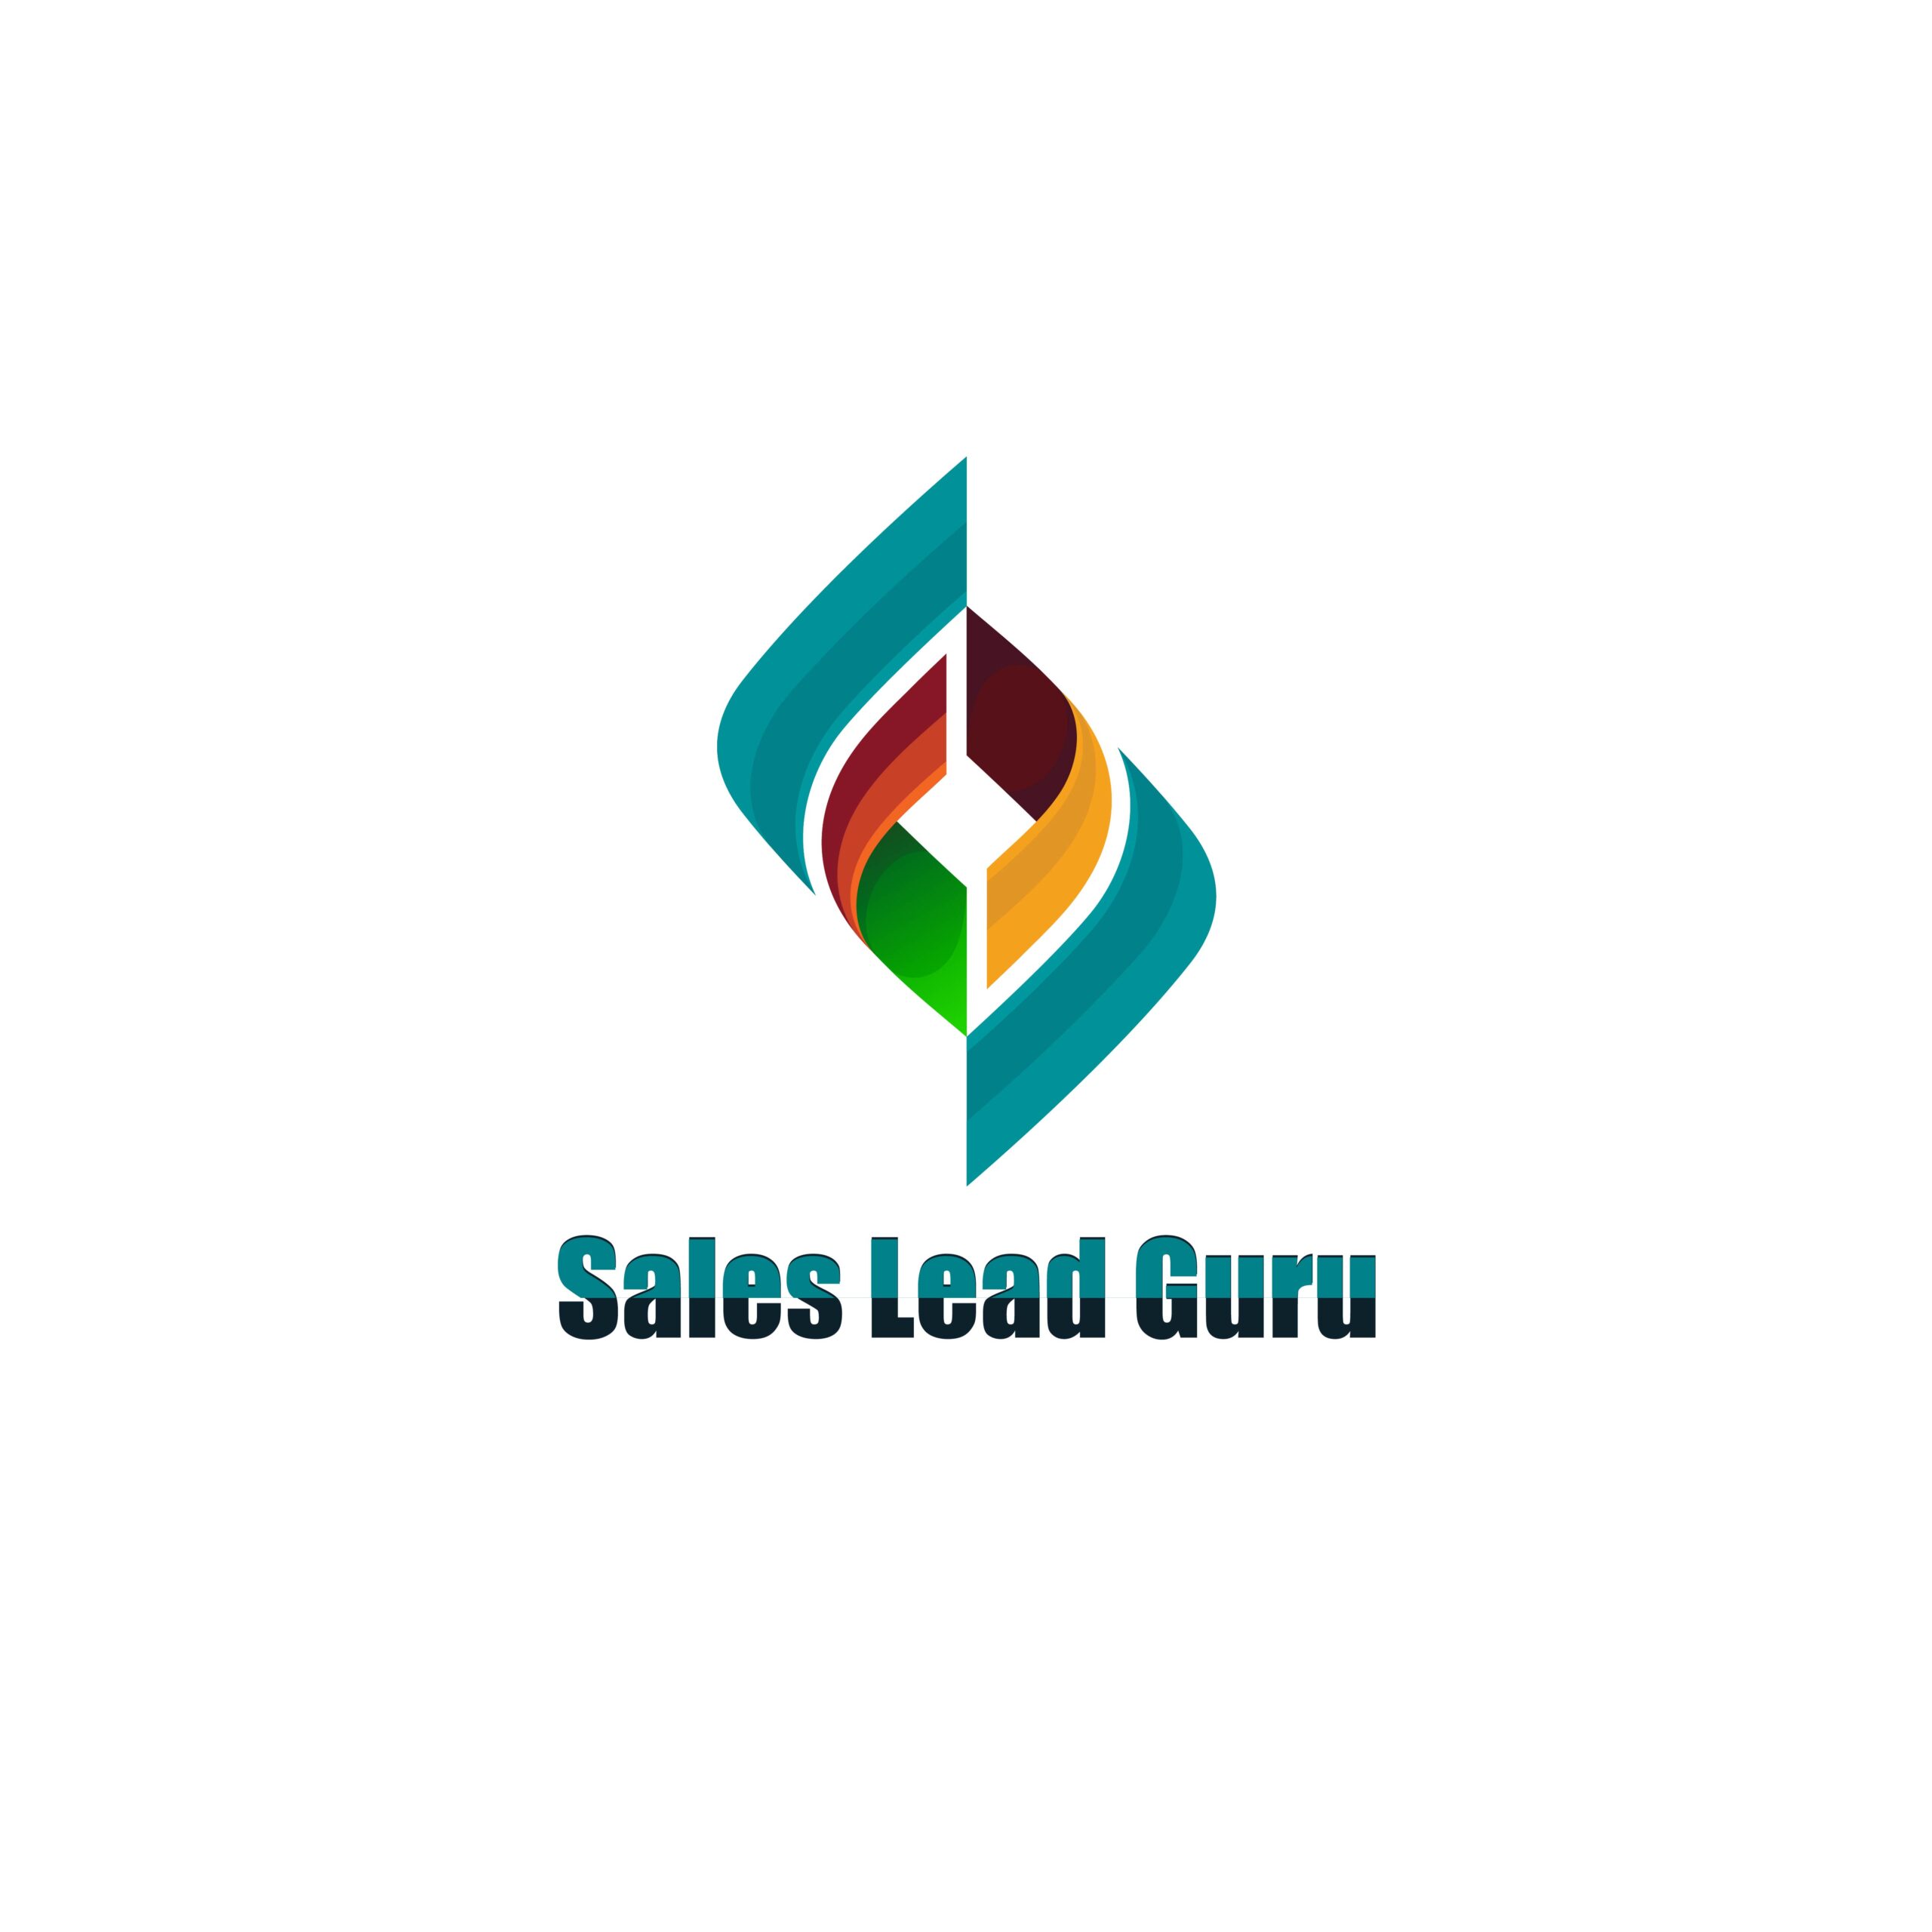 Sales Lead Guru